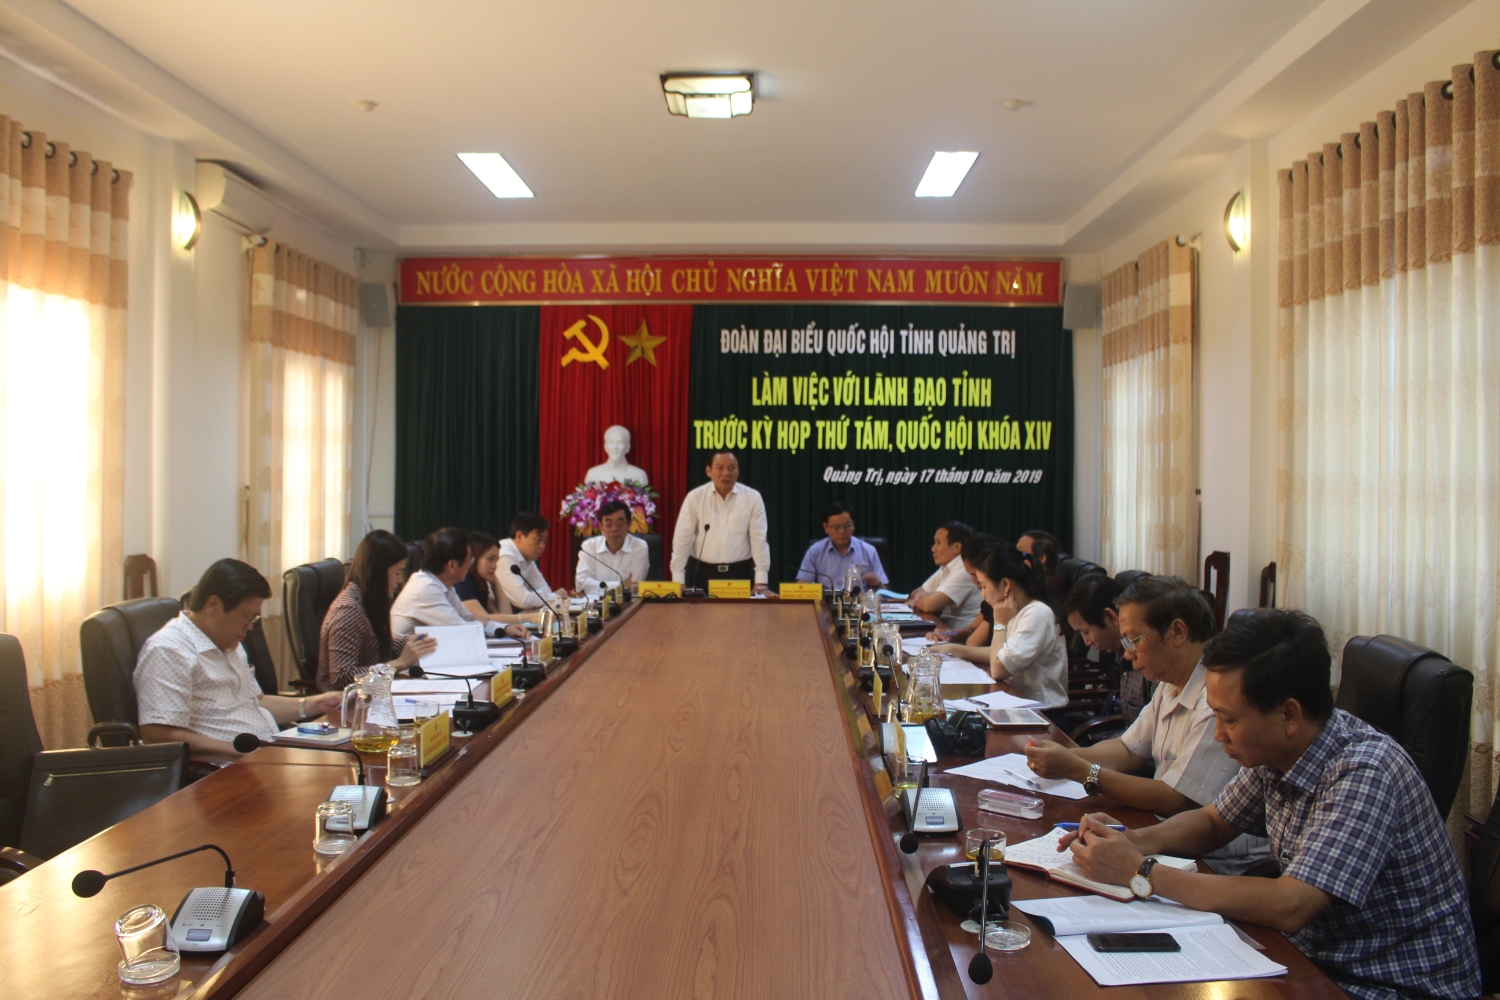 Bí thư Tỉnh ủy Nguyễn Văn Hùng mong muốn Đoàn ĐBQH tỉnh tiếp tục có nhiều đóng góp tích cực, hiệu quả vào hoạt động của Quốc hội, nhất là trong công tác xây dựng pháp luật